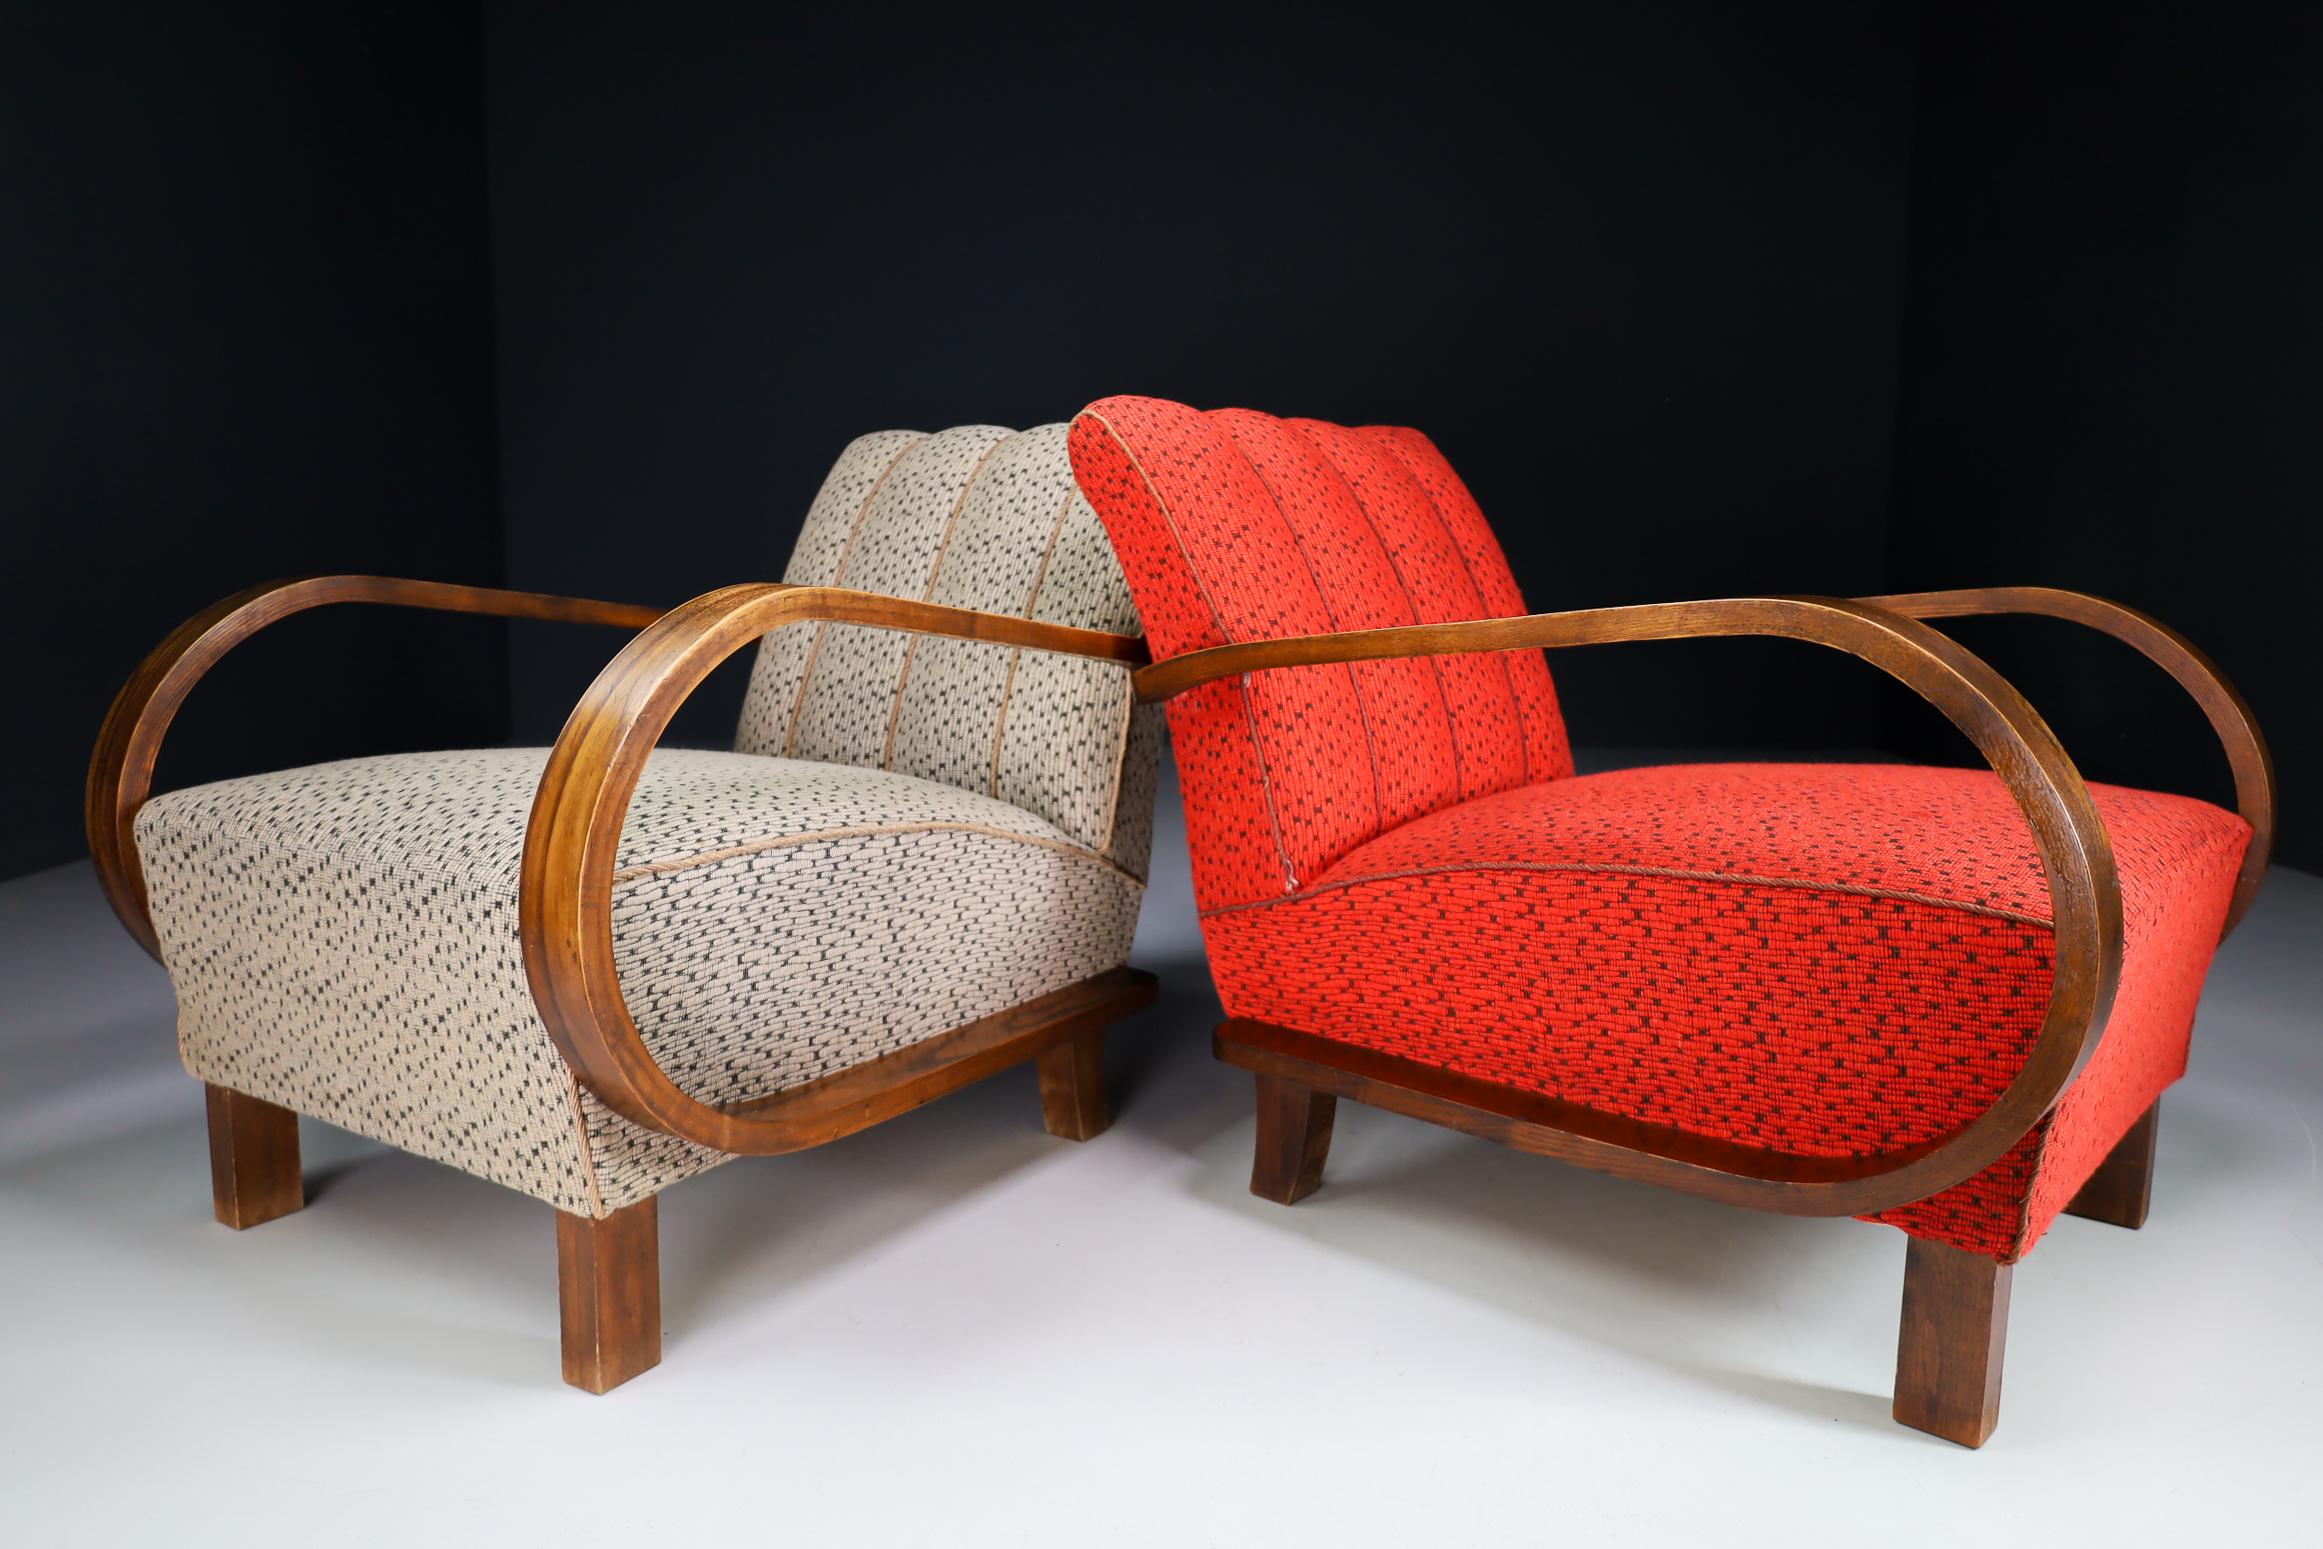 Zwei originale Art-Deco-Sessel oder Lounge Chairs, hergestellt und entworfen in Österreich in den 1920er Jahren. Hergestellt aus Bugholz und mit dem Originalstoff. Diese Sessel sind ein echter Blickfang für jedes Interieur wie Wohnzimmer,